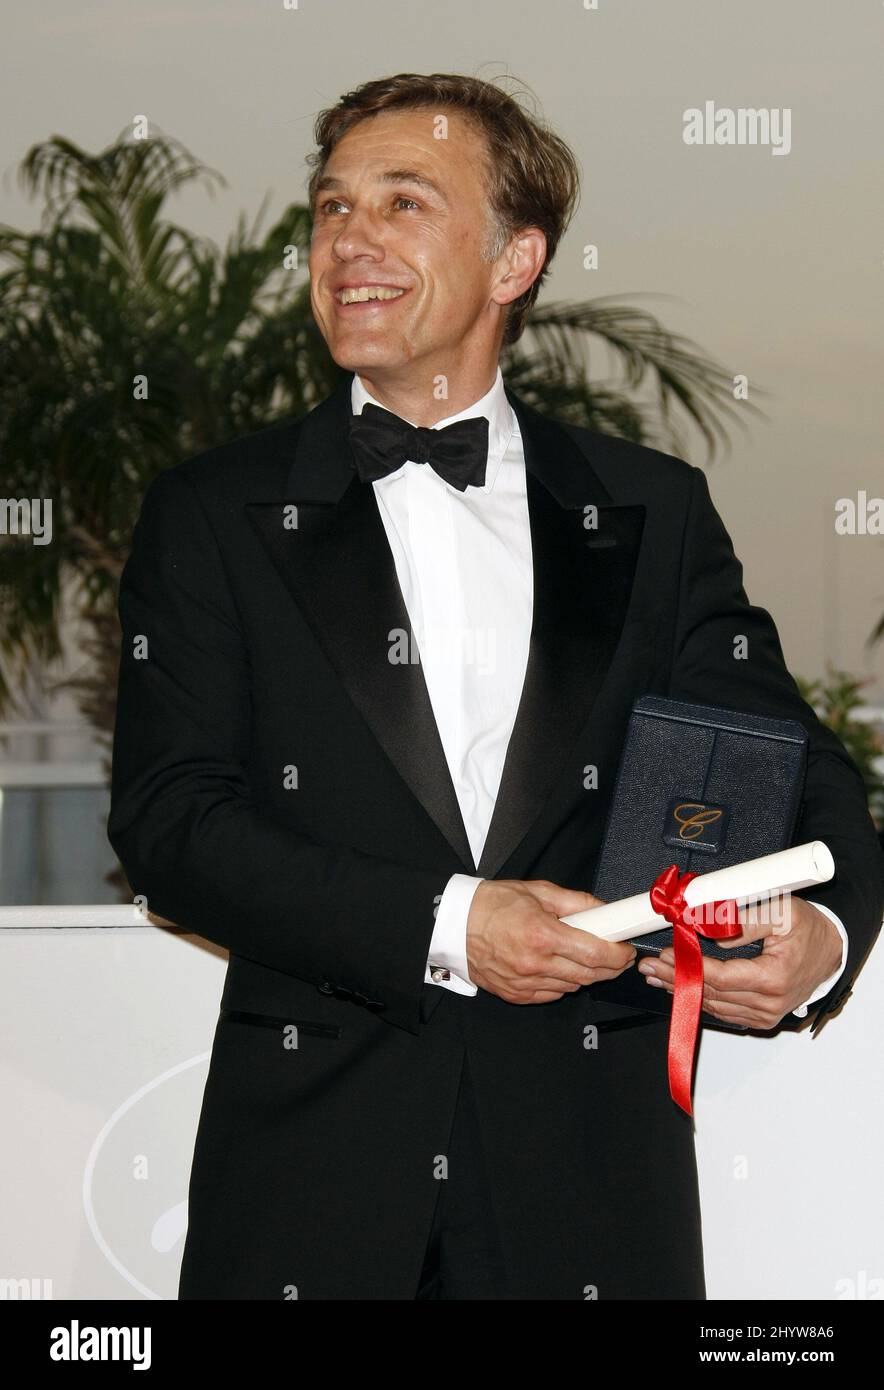 L'acteur autrichien Christoph Waltz pose avec le prix du meilleur acteur qu'il a reçu pour le film "Inglourious Basterds", lors d'un appel photo à la suite de la cérémonie de remise des prix, lors du festival international du film 62nd à Cannes. Banque D'Images